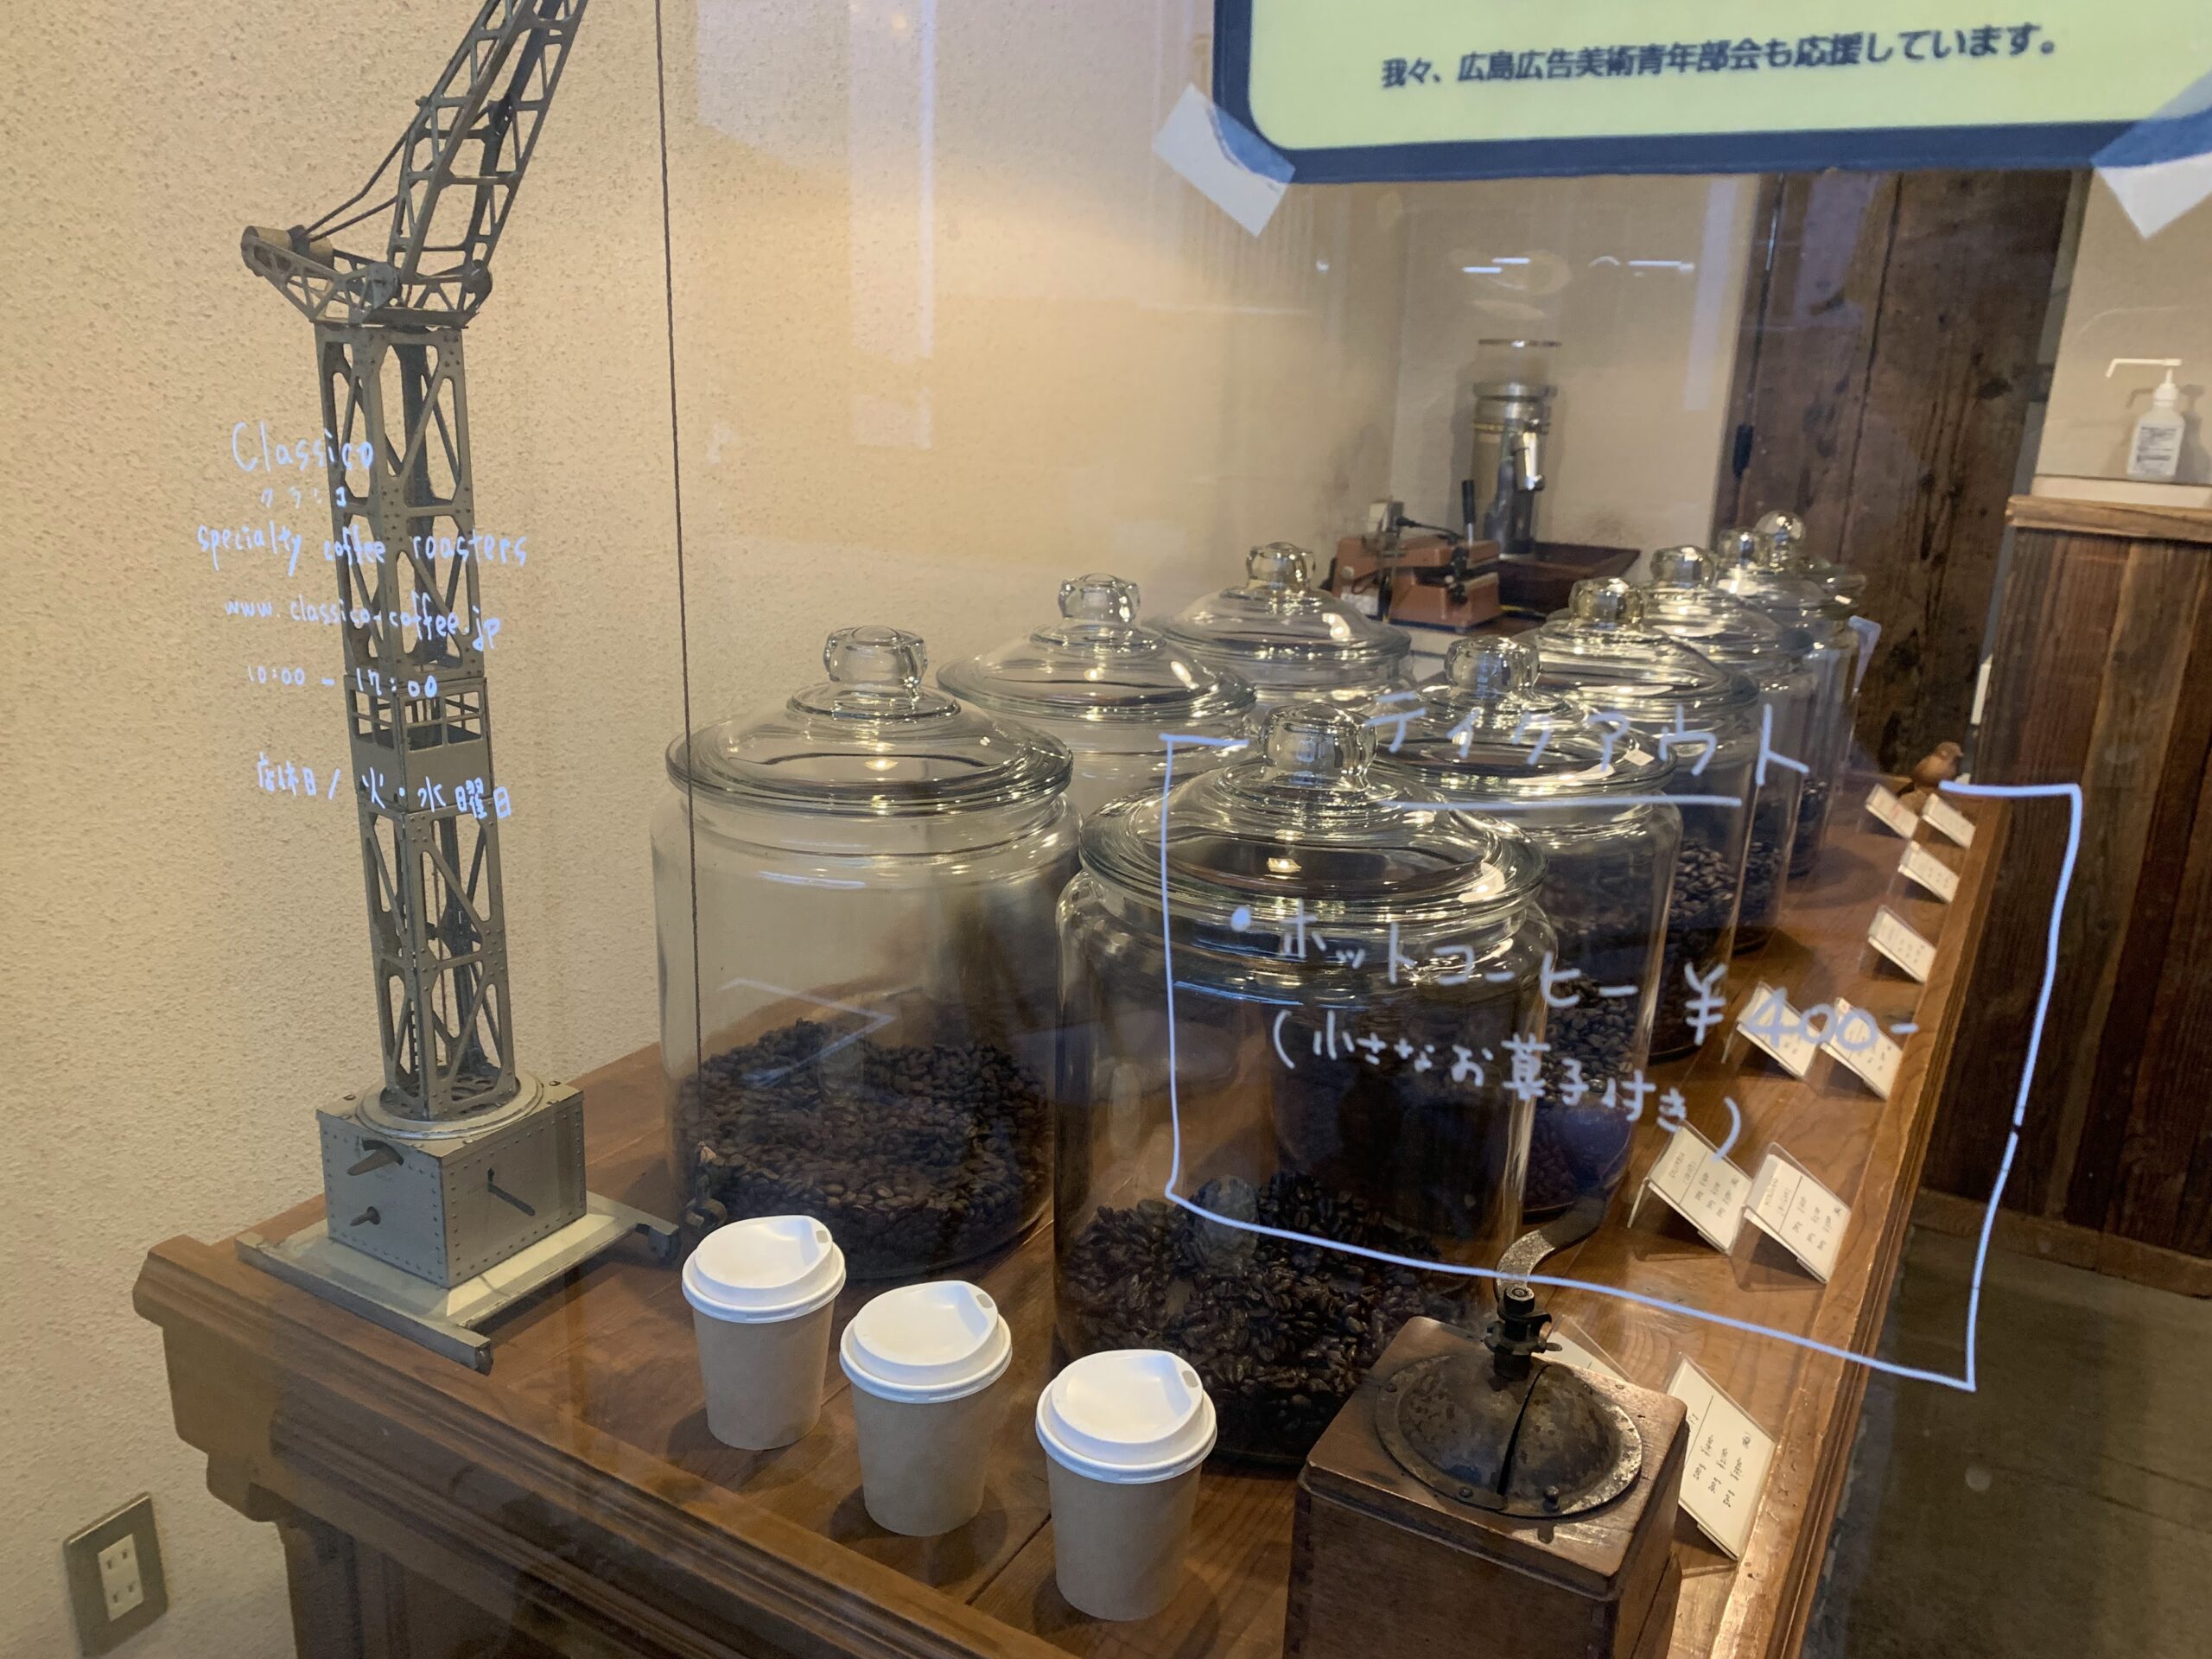 尾道商店街 Classico クラシコ でコーヒーをテイクアウト 看板のないお店は 珈琲店だった 旅に関わる日々